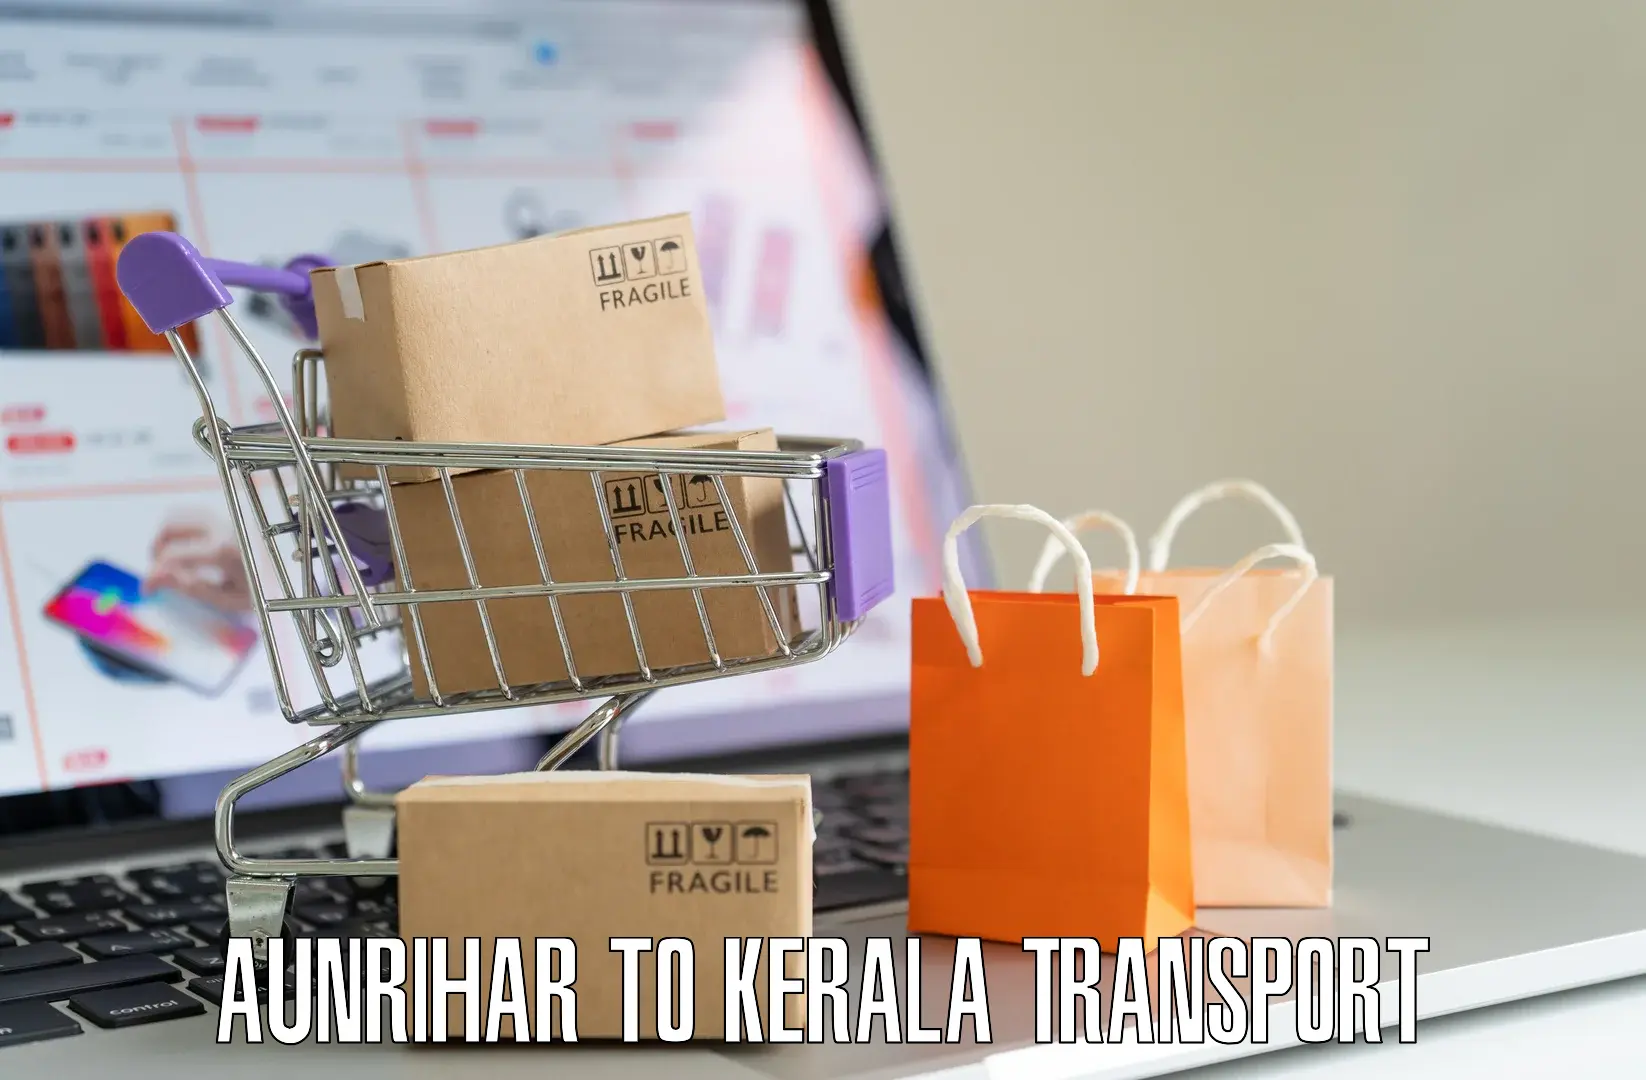 Two wheeler parcel service Aunrihar to Kothamangalam